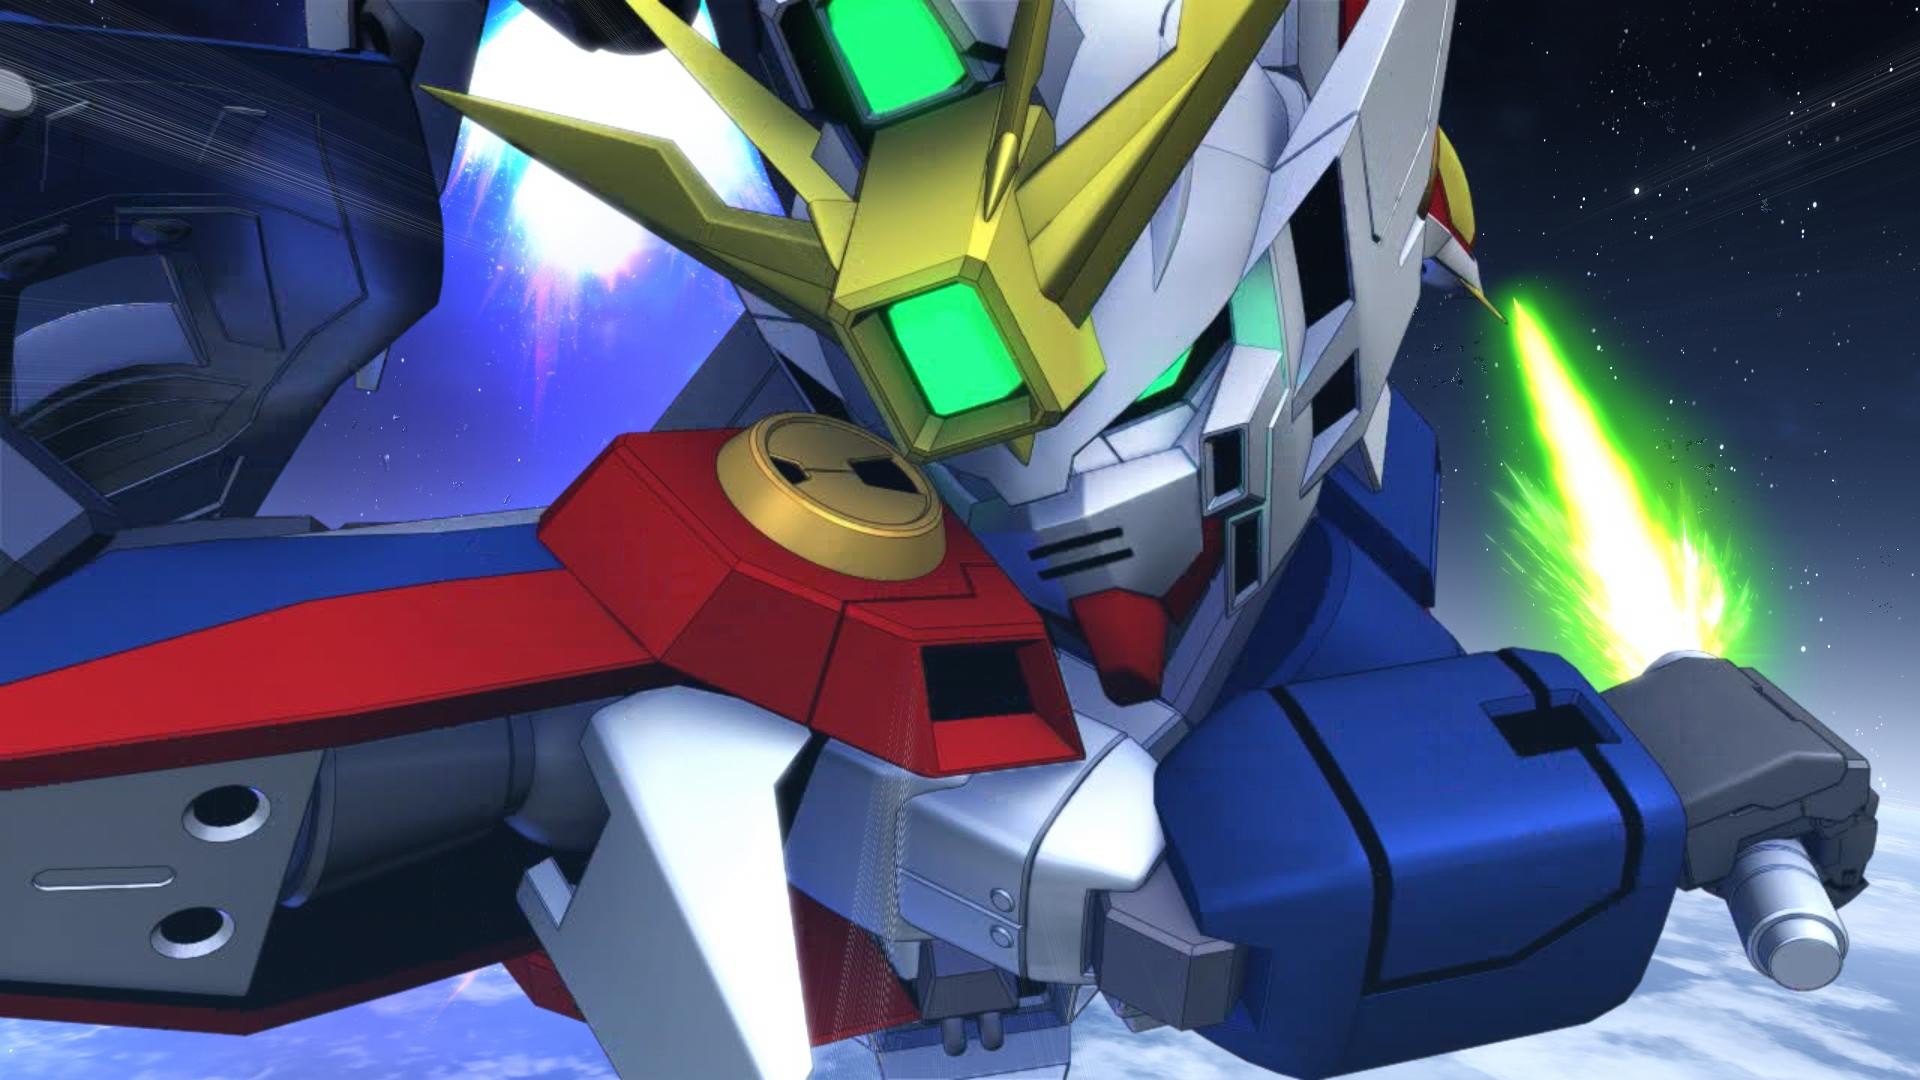 Résultat de recherche d'images pour "SD Gundam G Generation Cross Rays""